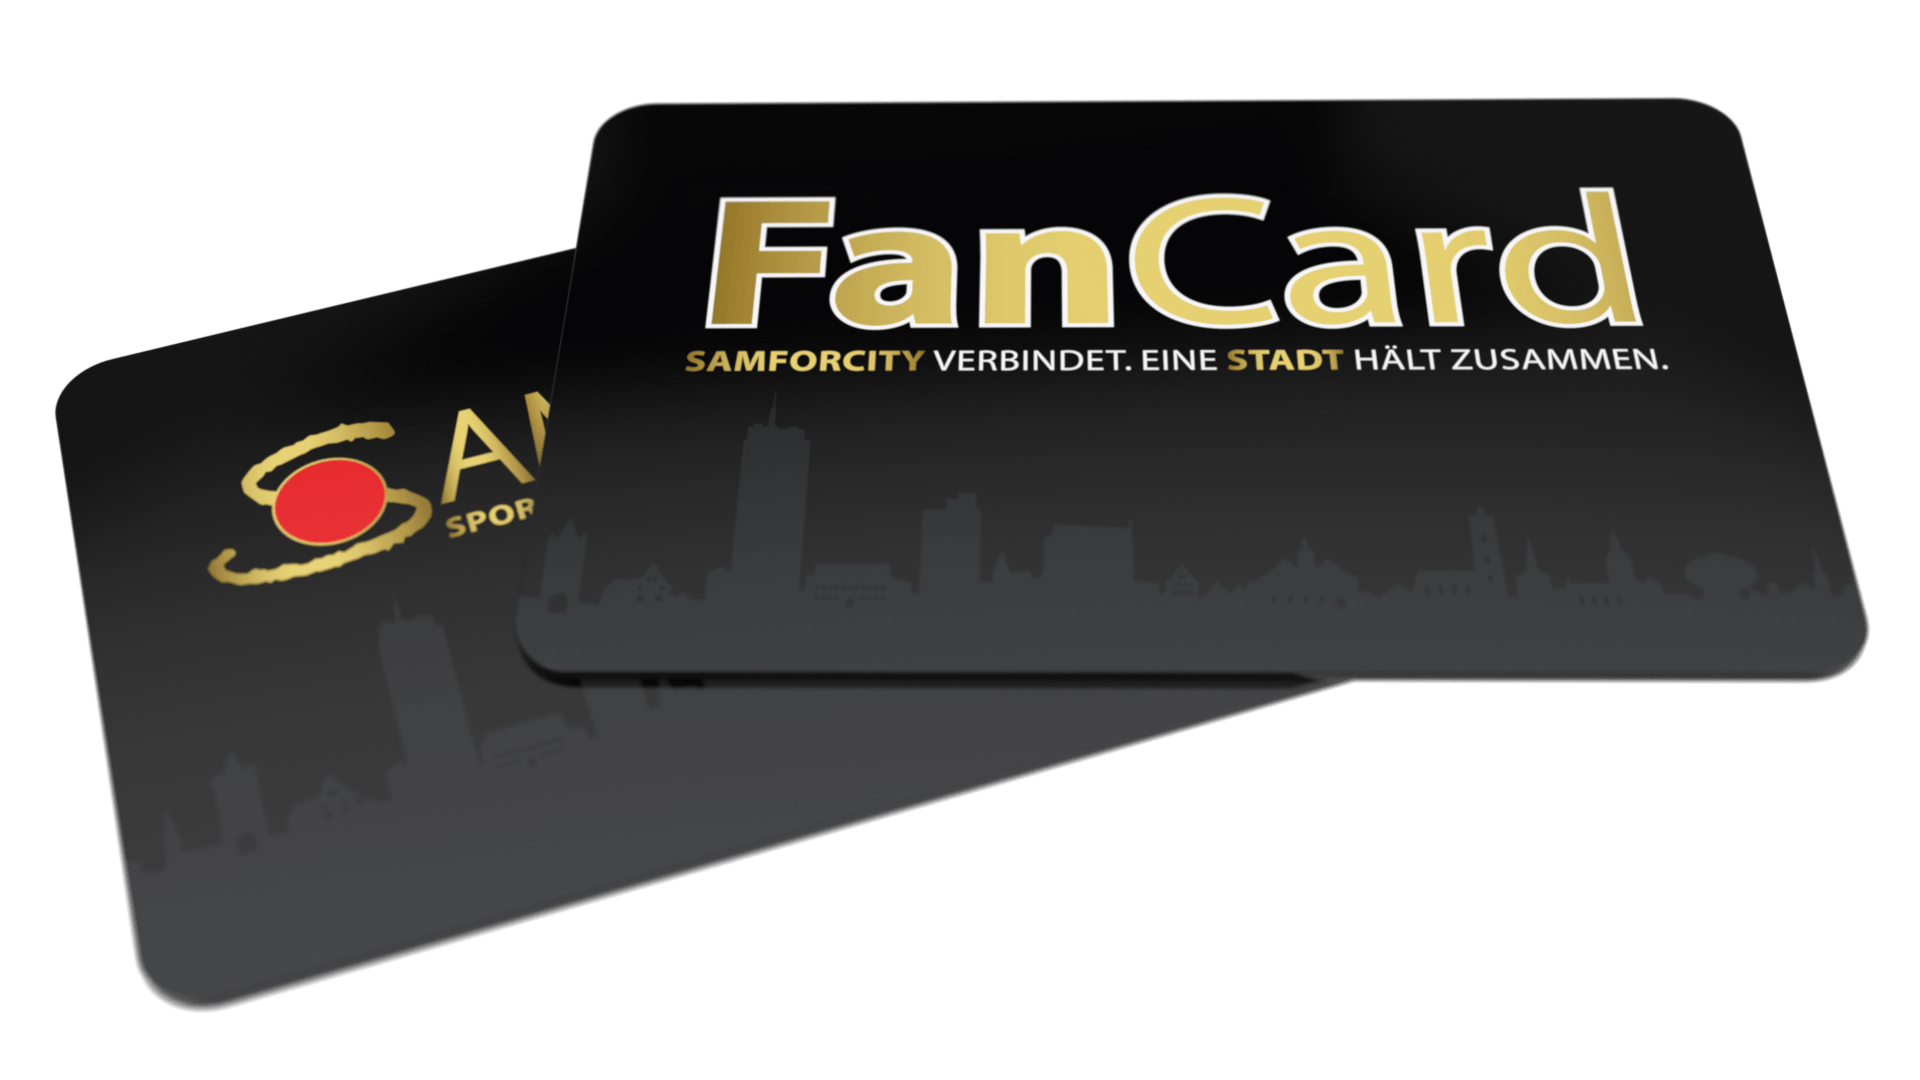 Bild der Samforcitycard und der Fancard der Stadt Jena